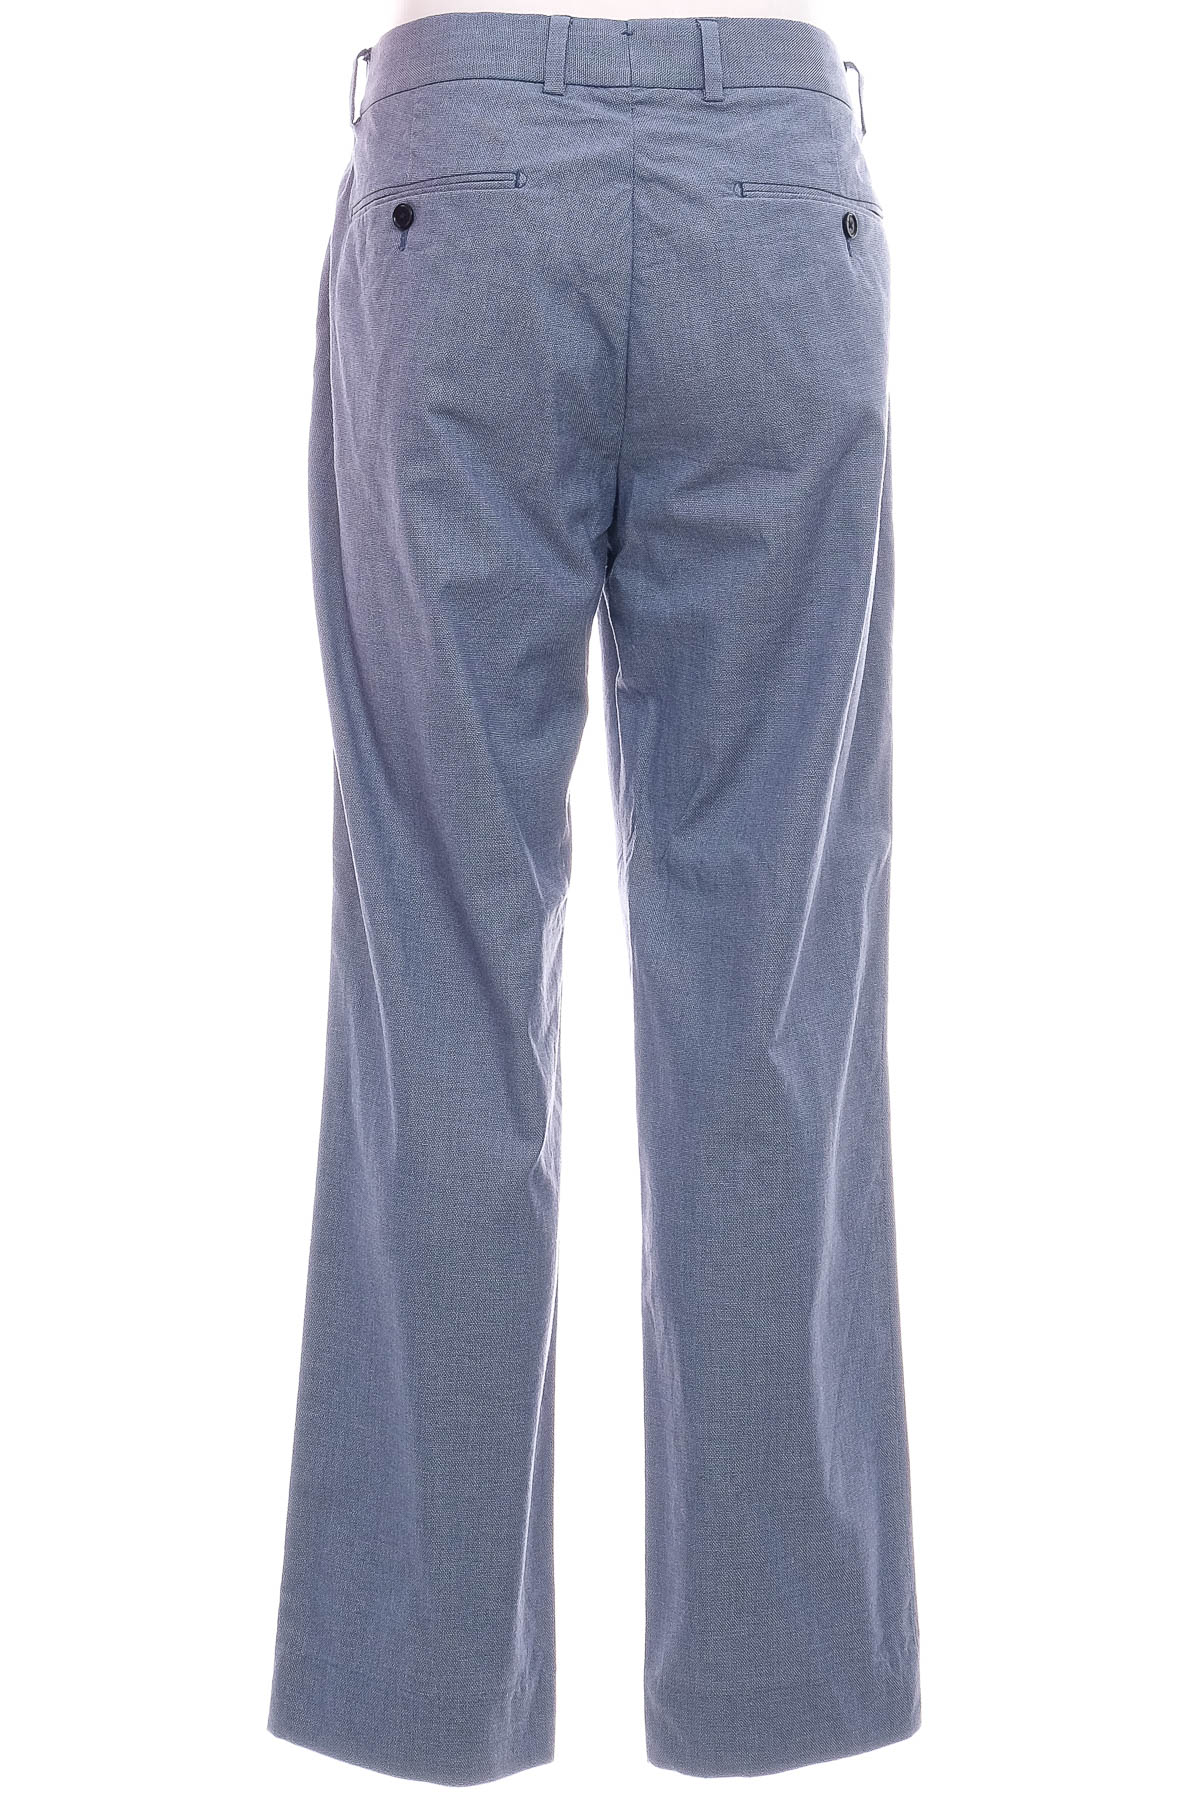 Pantalon pentru bărbați - SABA - 1